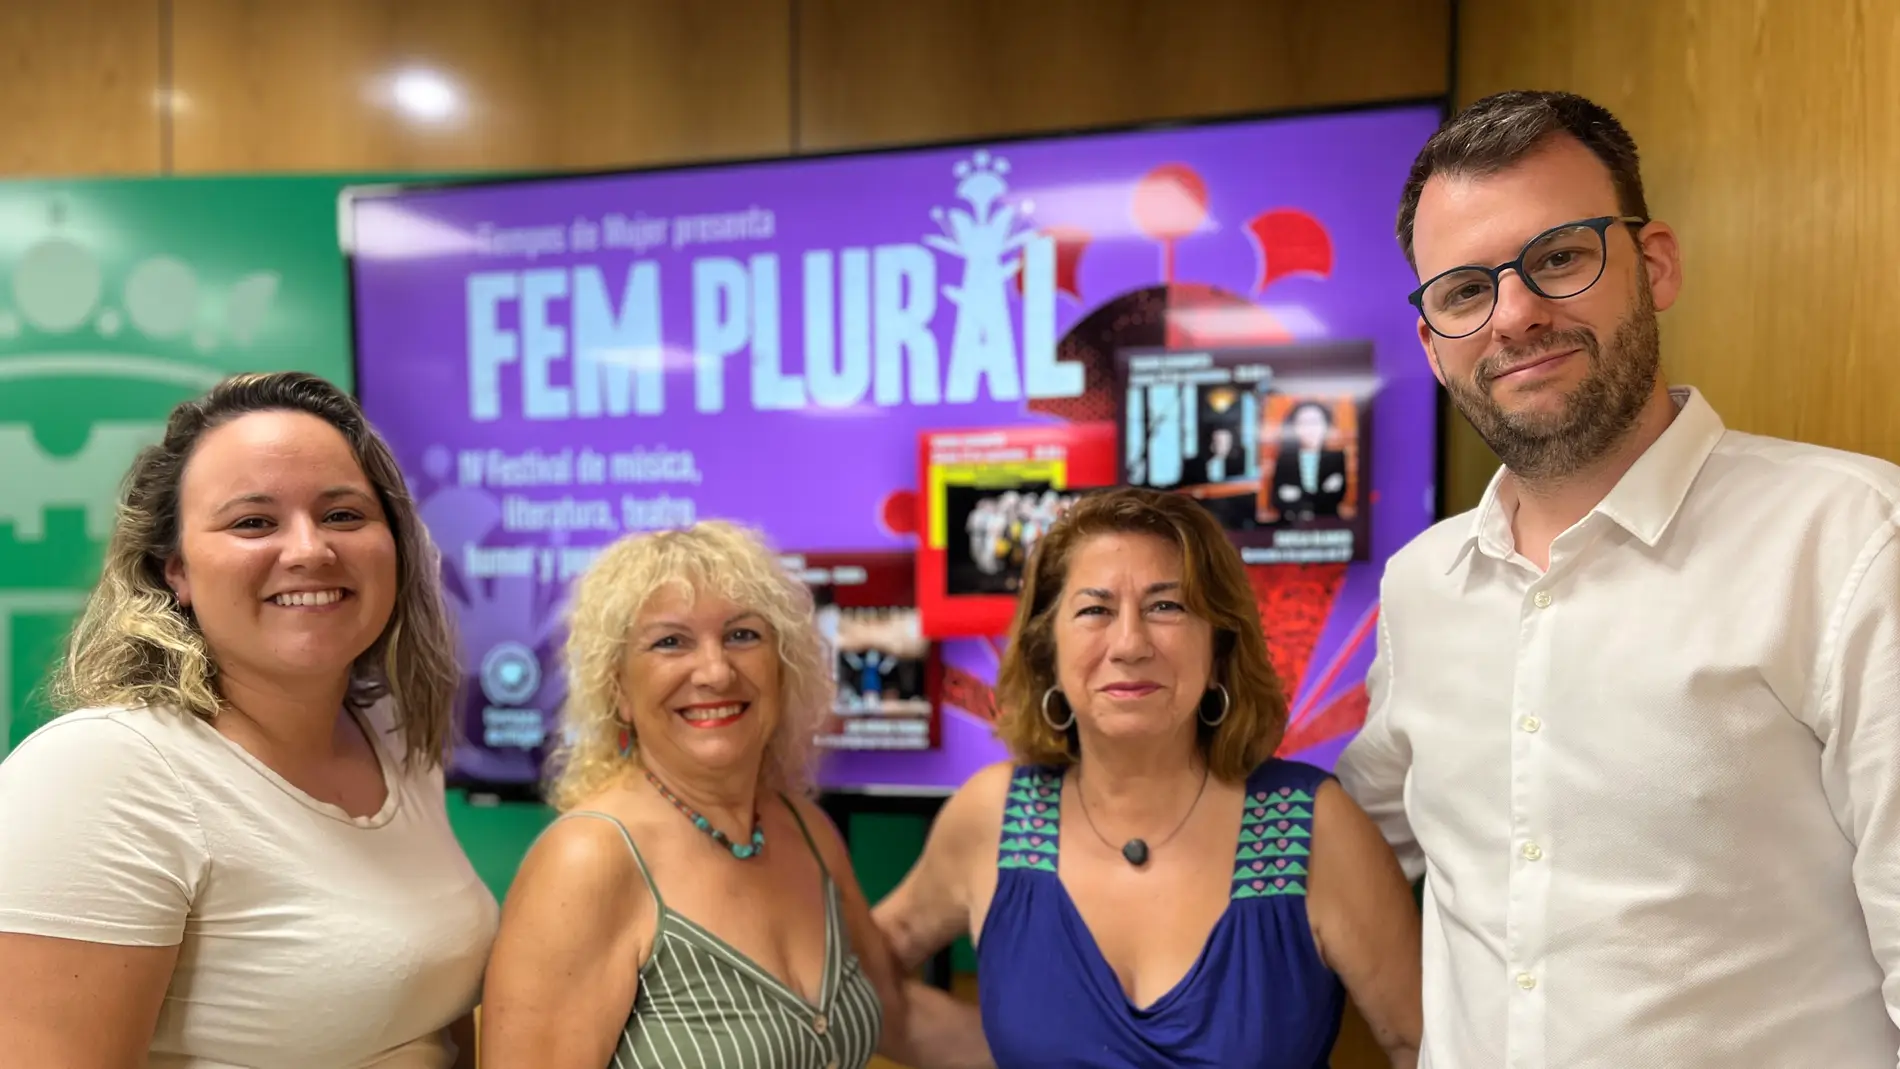 Petrer será el epicentro de la cultura feminista en septiembre con el Festival "Fem Plural".